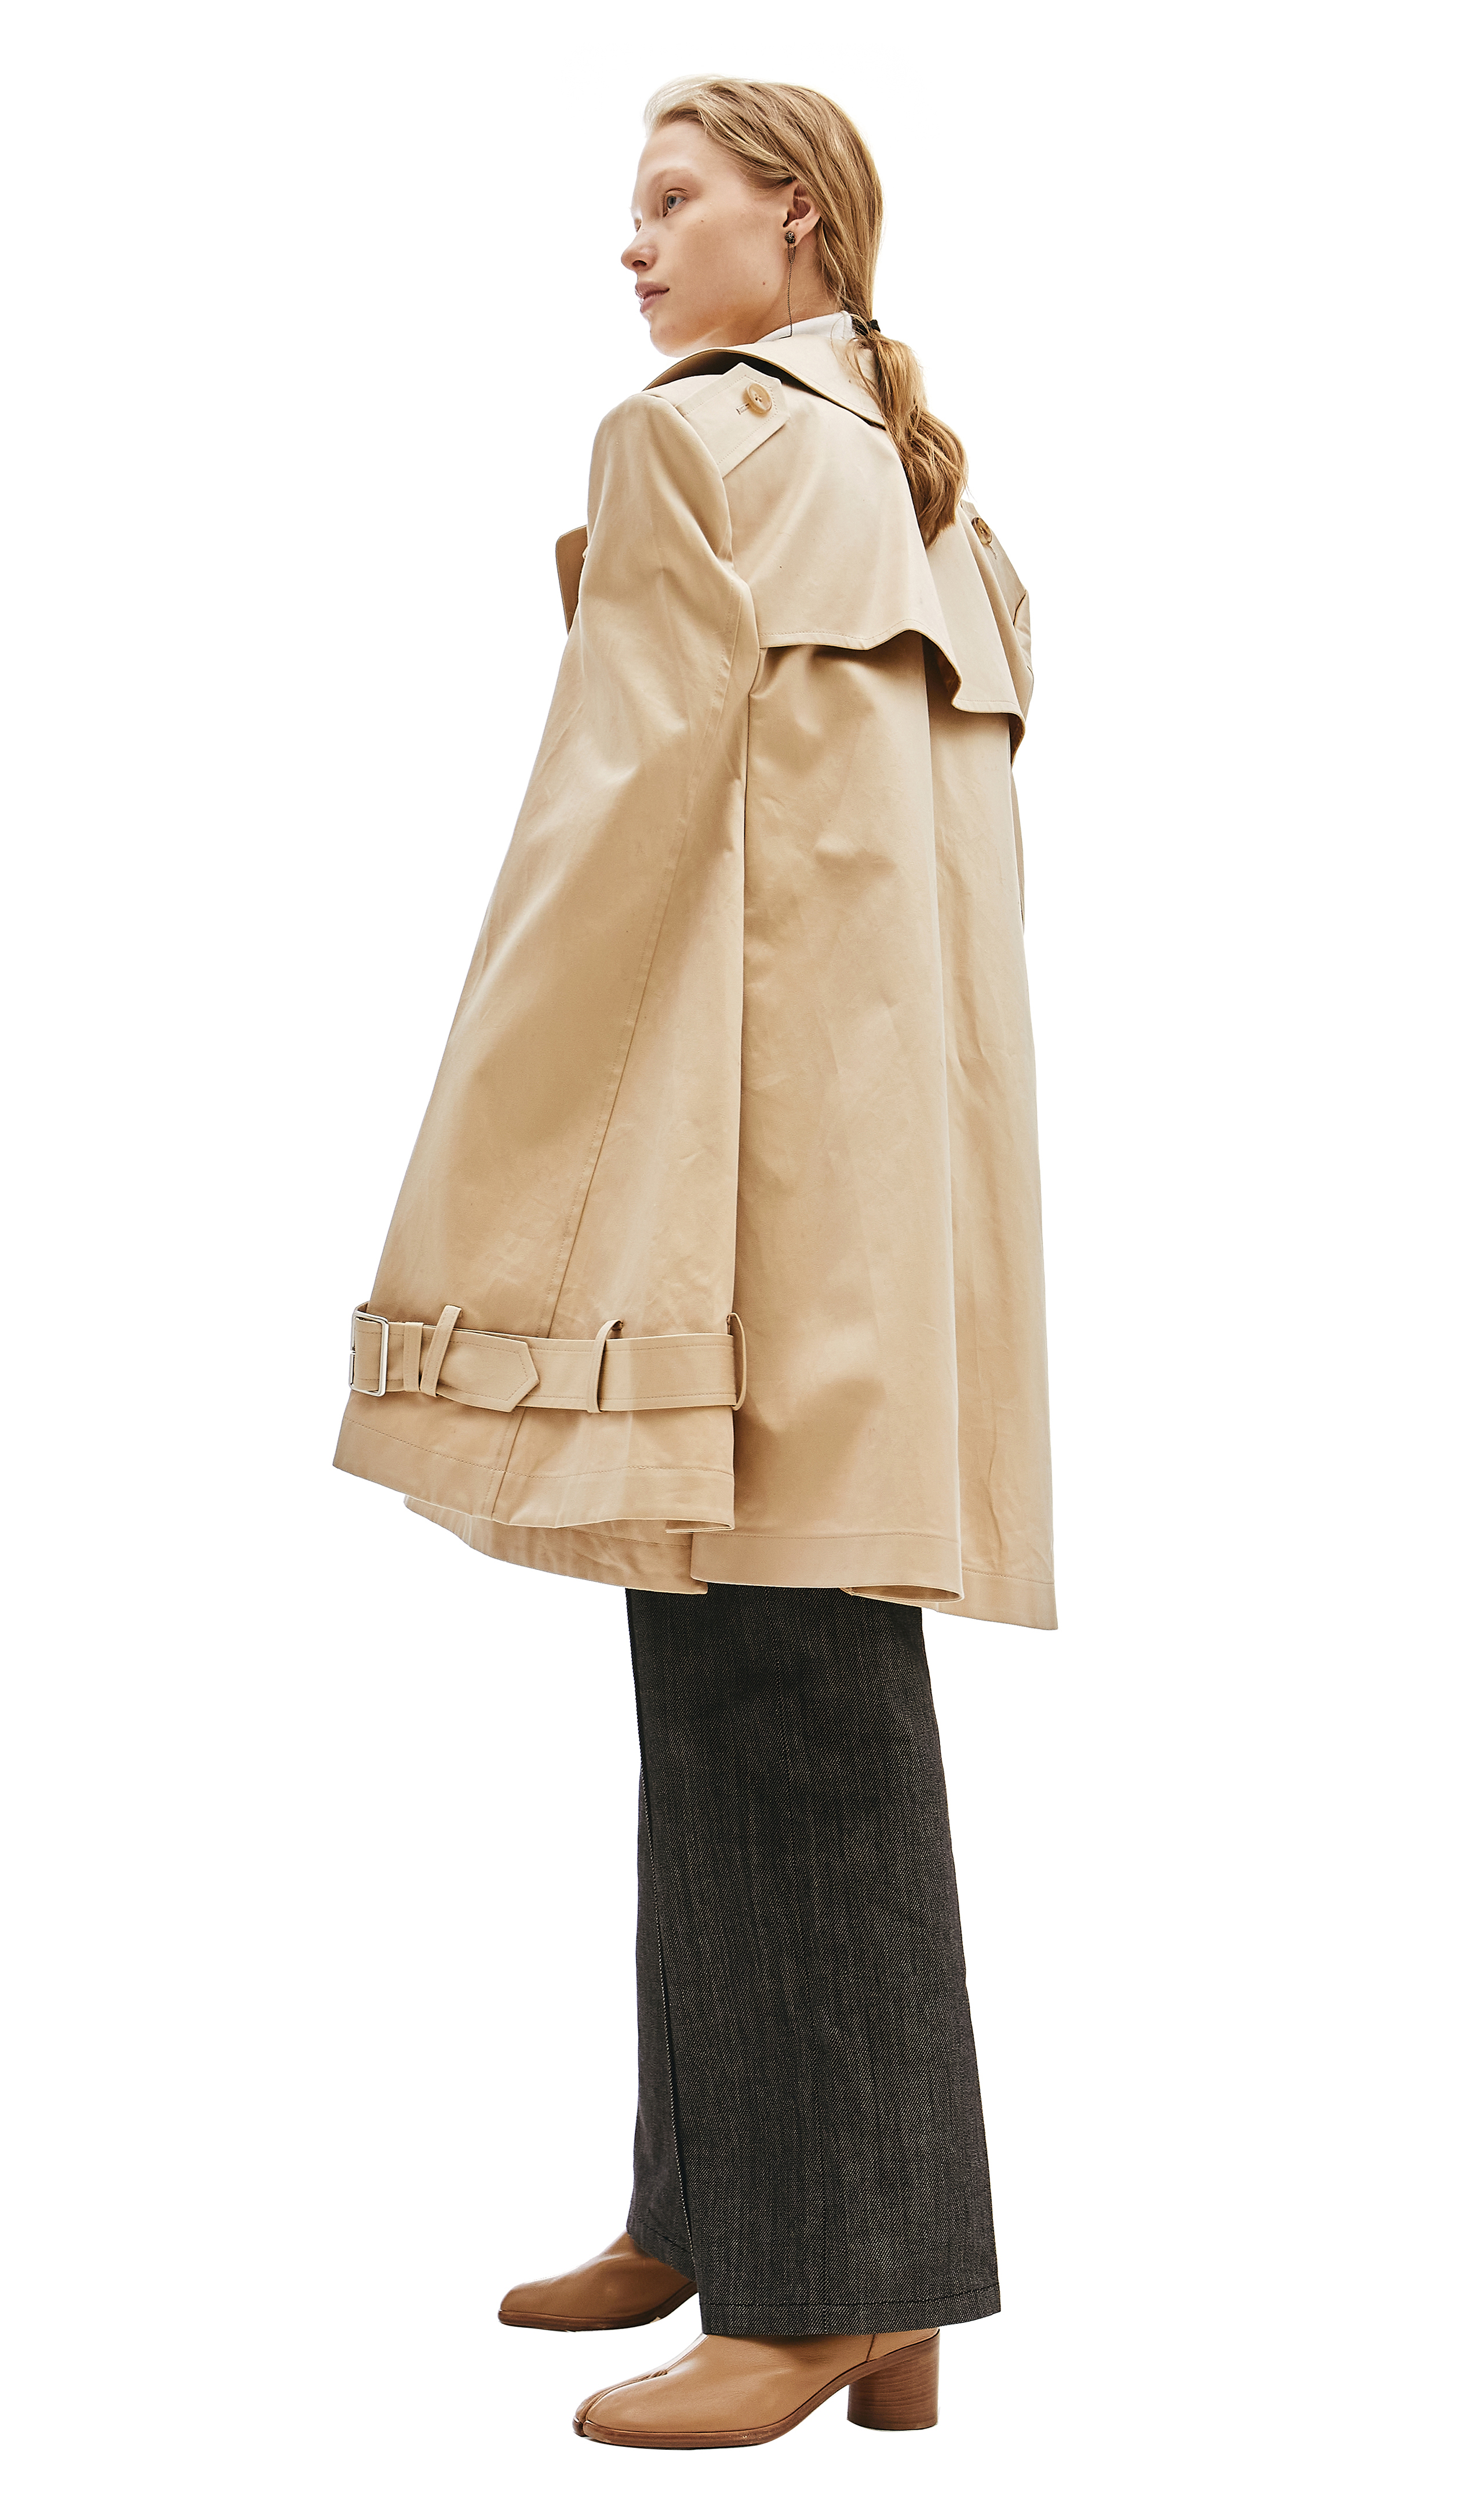 Sold at Auction: LOUIS VUITTON Trench en coton beige (taille 38) Trench-coat  in beige cotton (size 38) BON ÉTAT (décoloration, taches